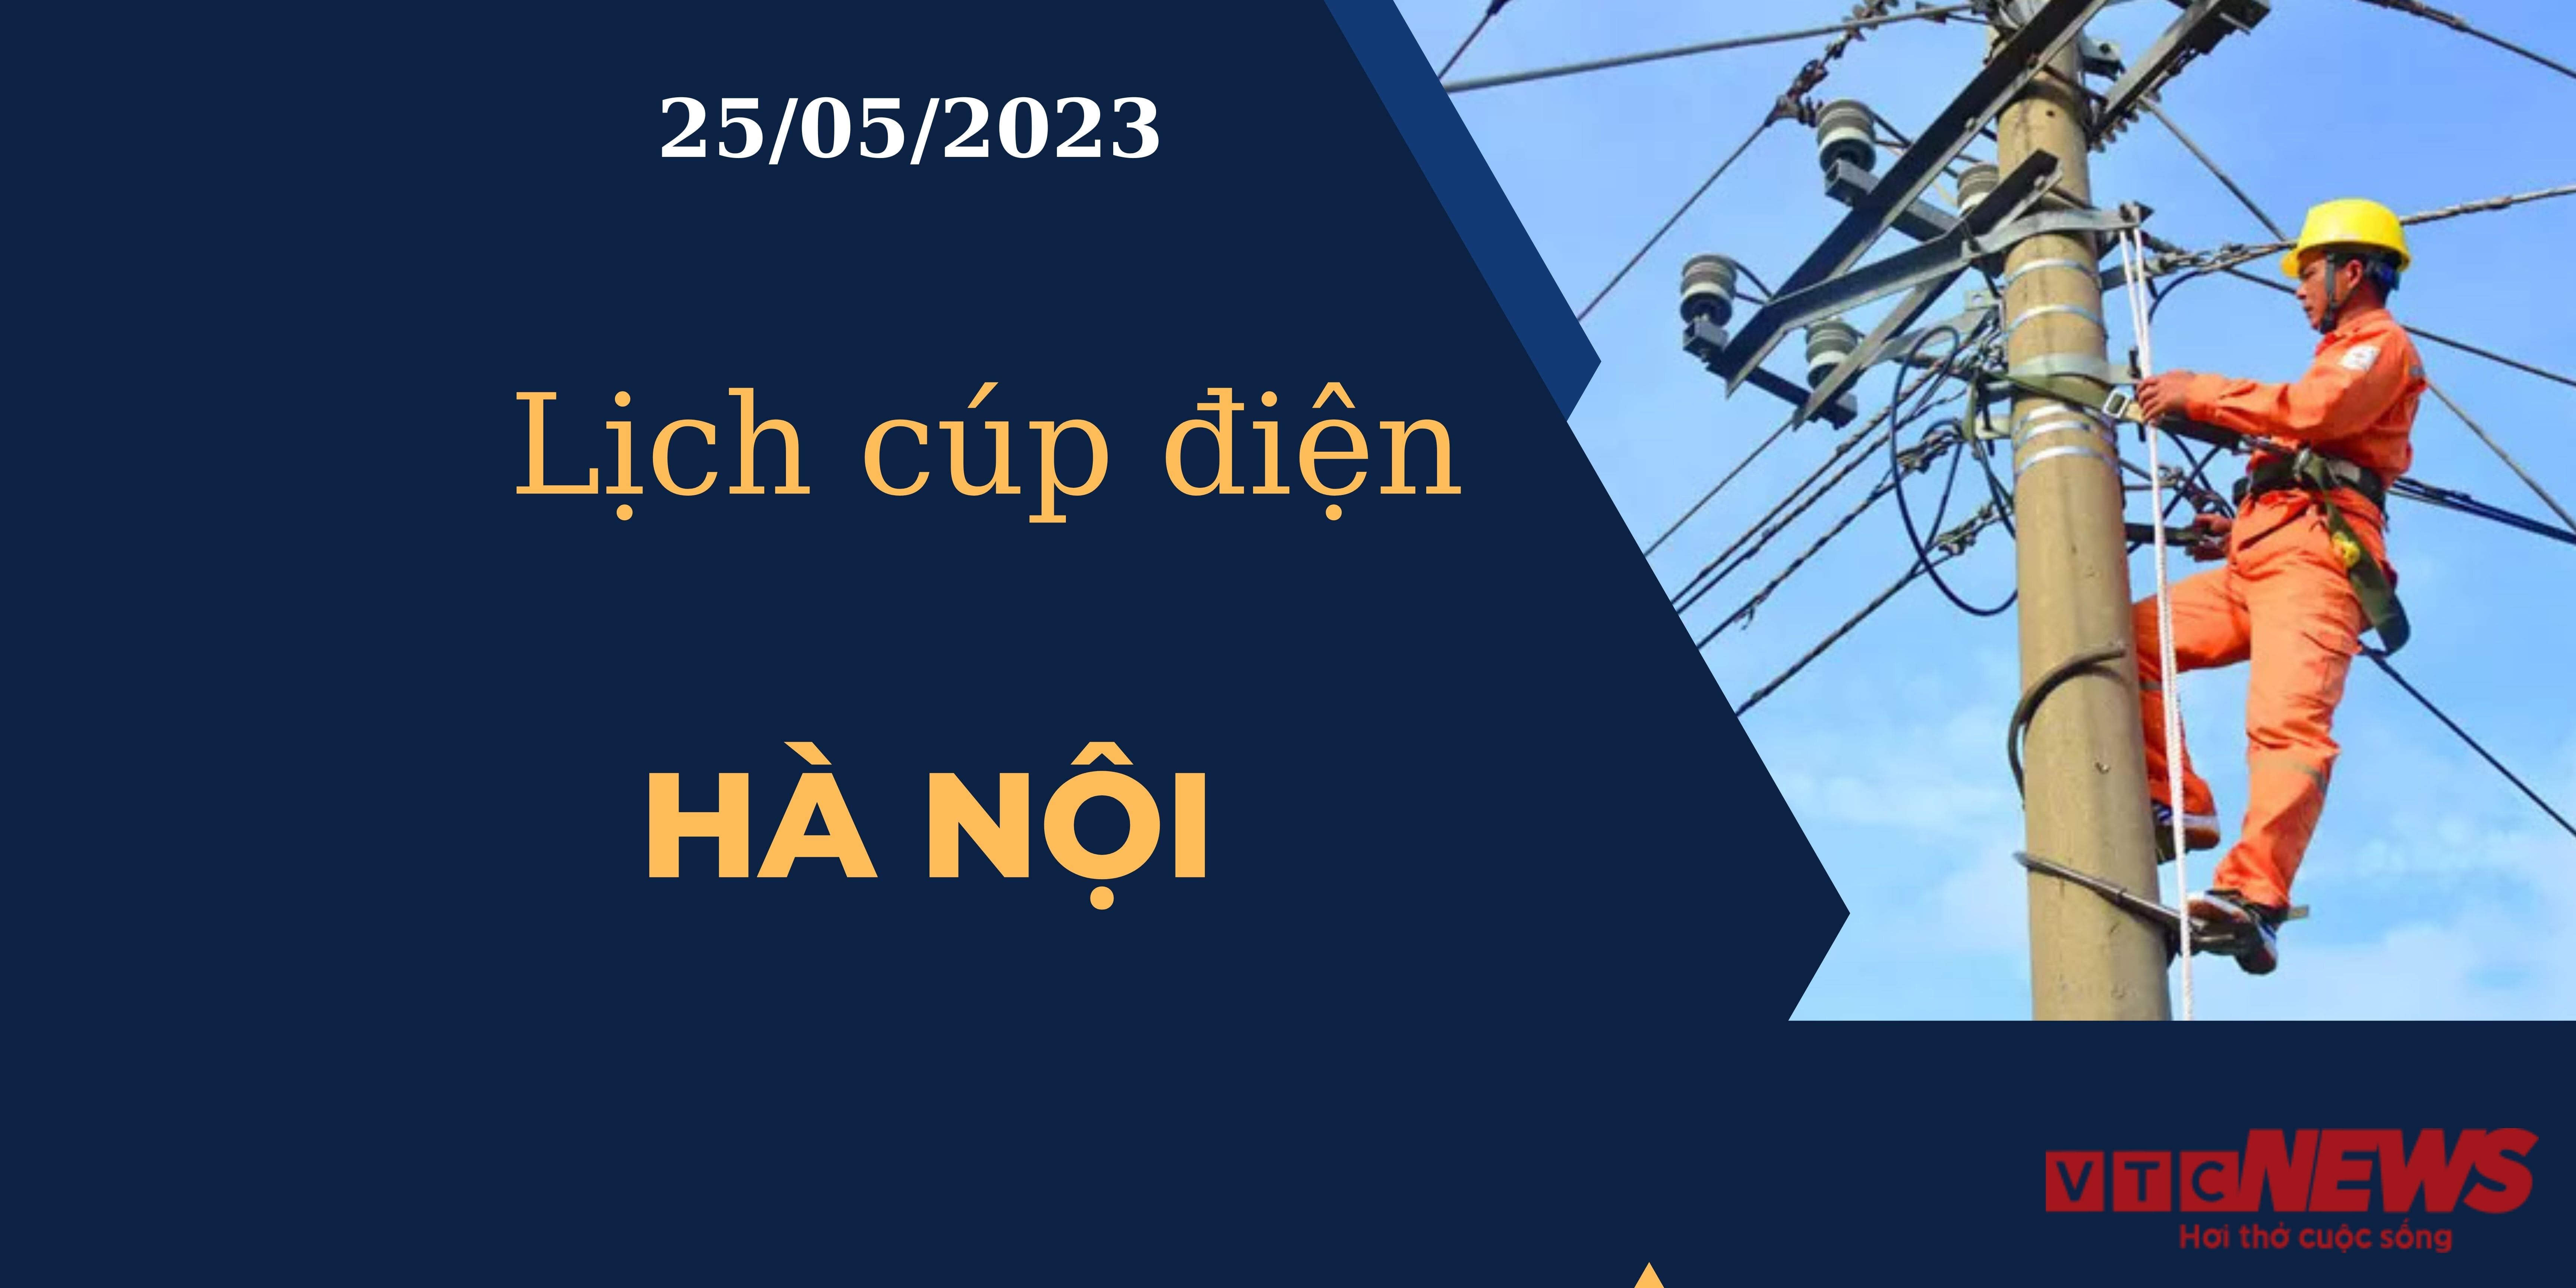 Lịch cúp điện hôm nay tại Hà Nội ngày 25/05/2023 - 1